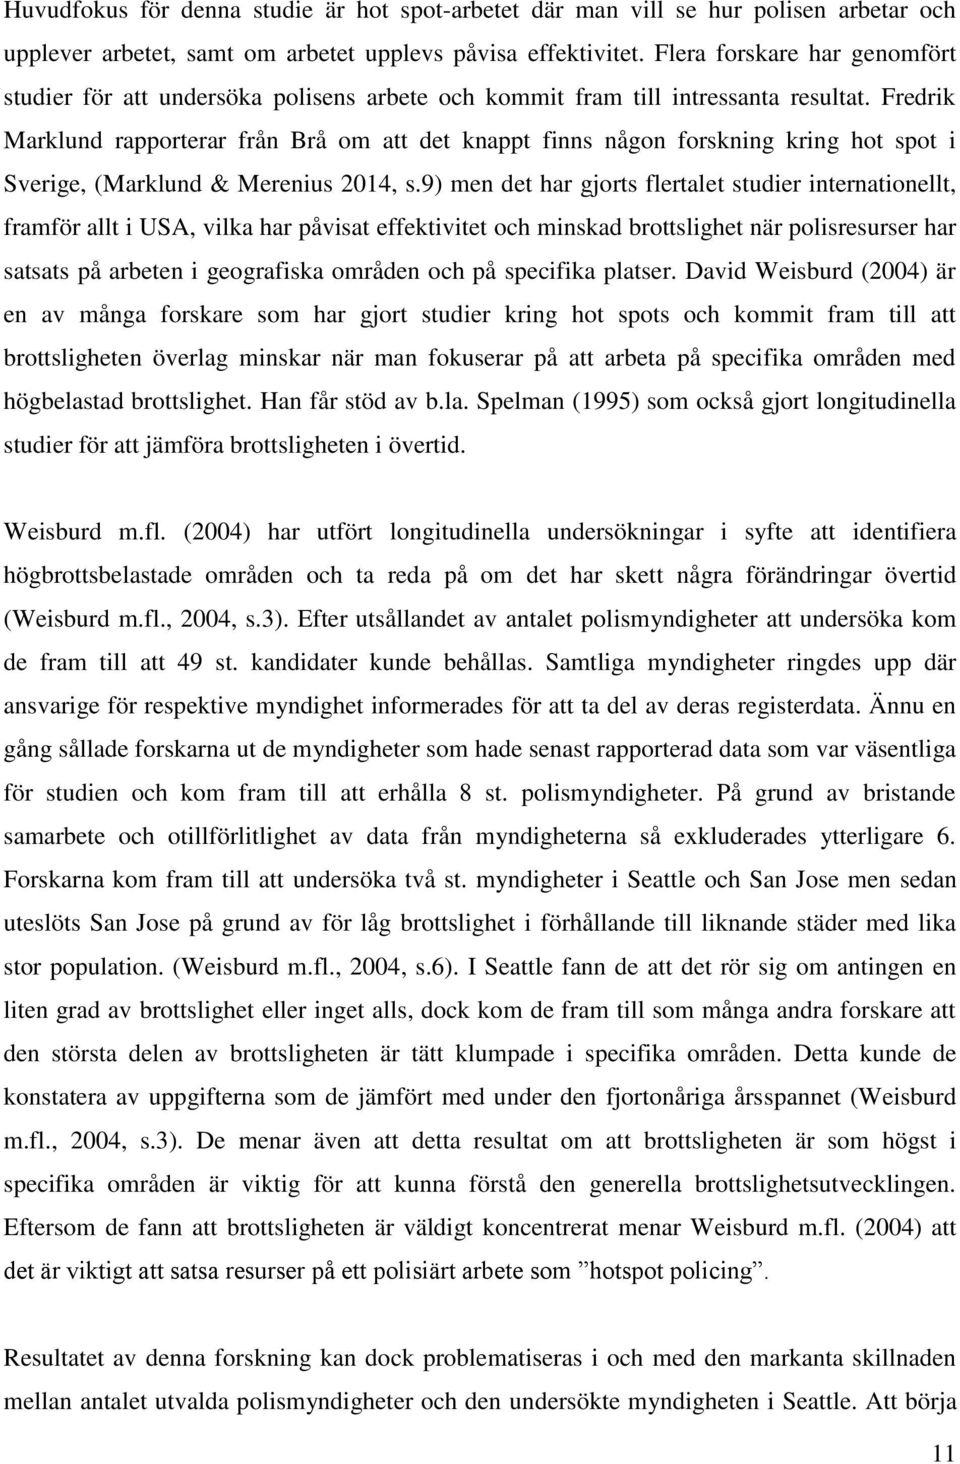 Fredrik Marklund rapporterar från Brå om att det knappt finns någon forskning kring hot spot i Sverige, (Marklund & Merenius 2014, s.